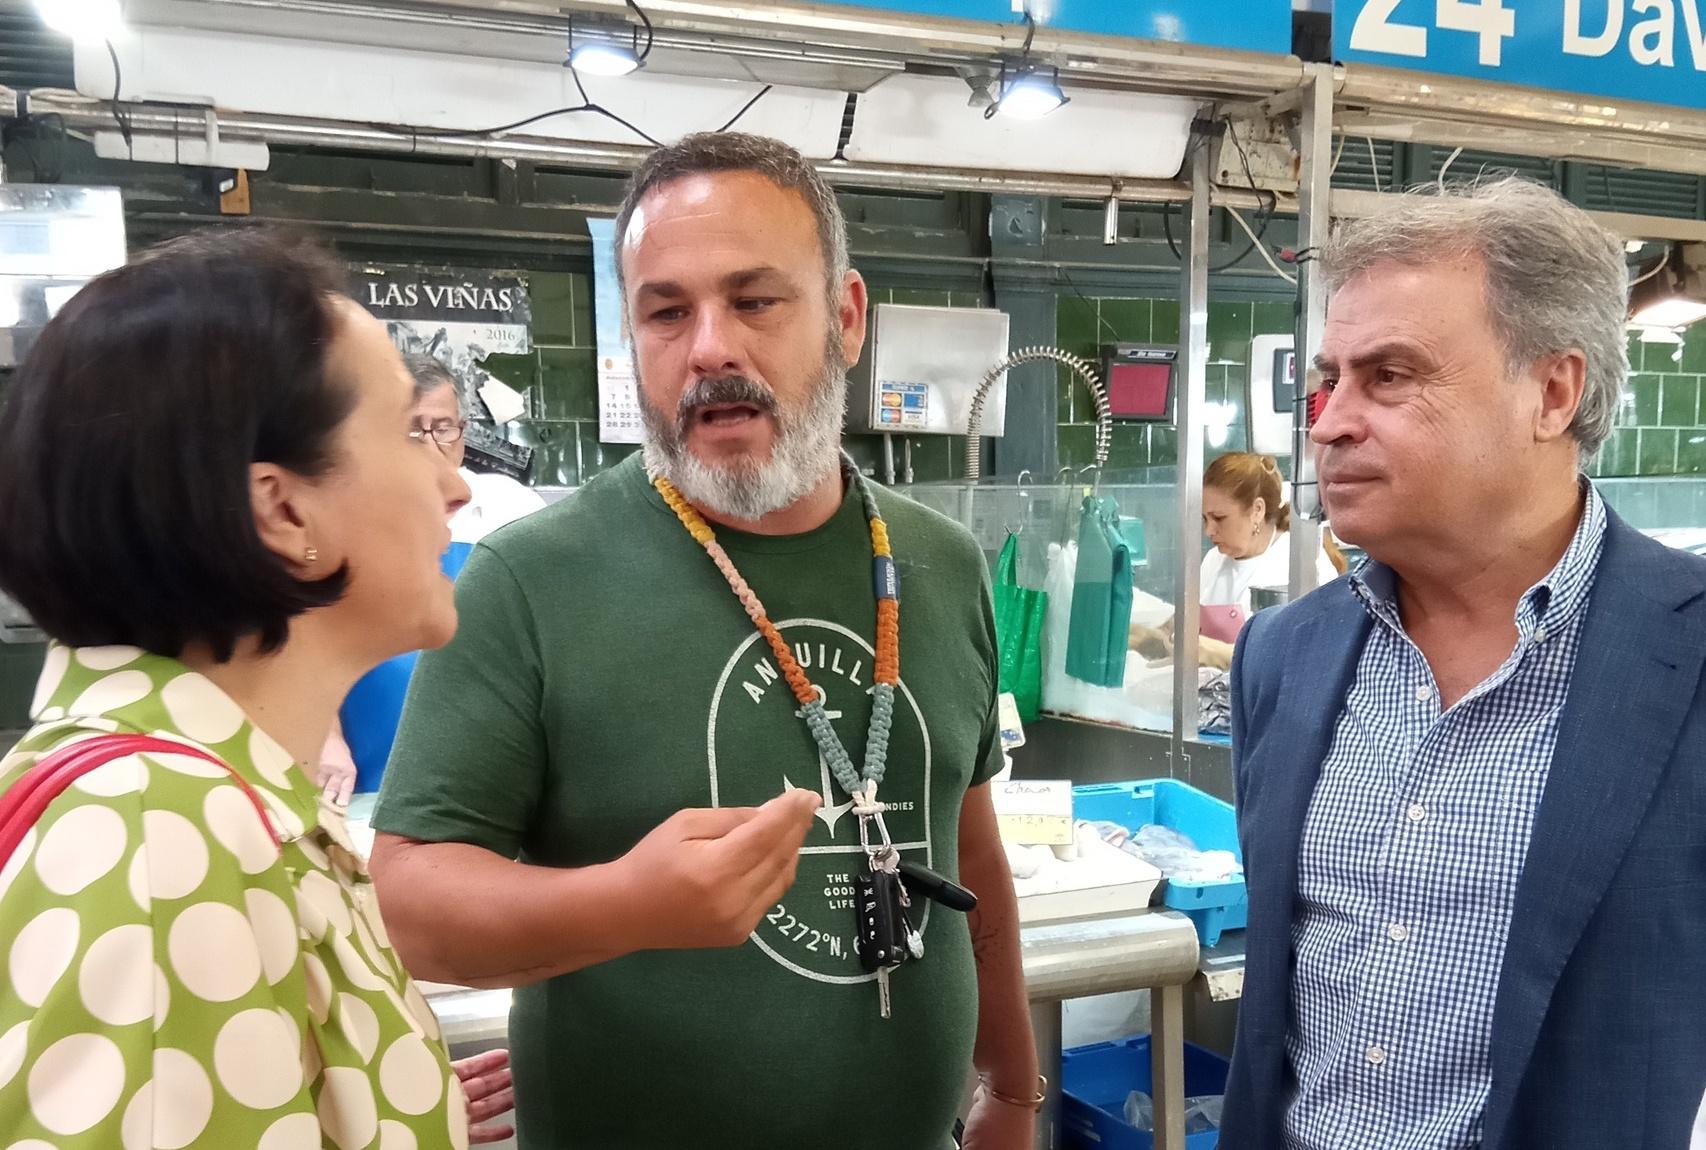 El prestigioso chef Ángel León graba en el Mercado Central de Abastos de Jerez para una serie gastronómica internacional